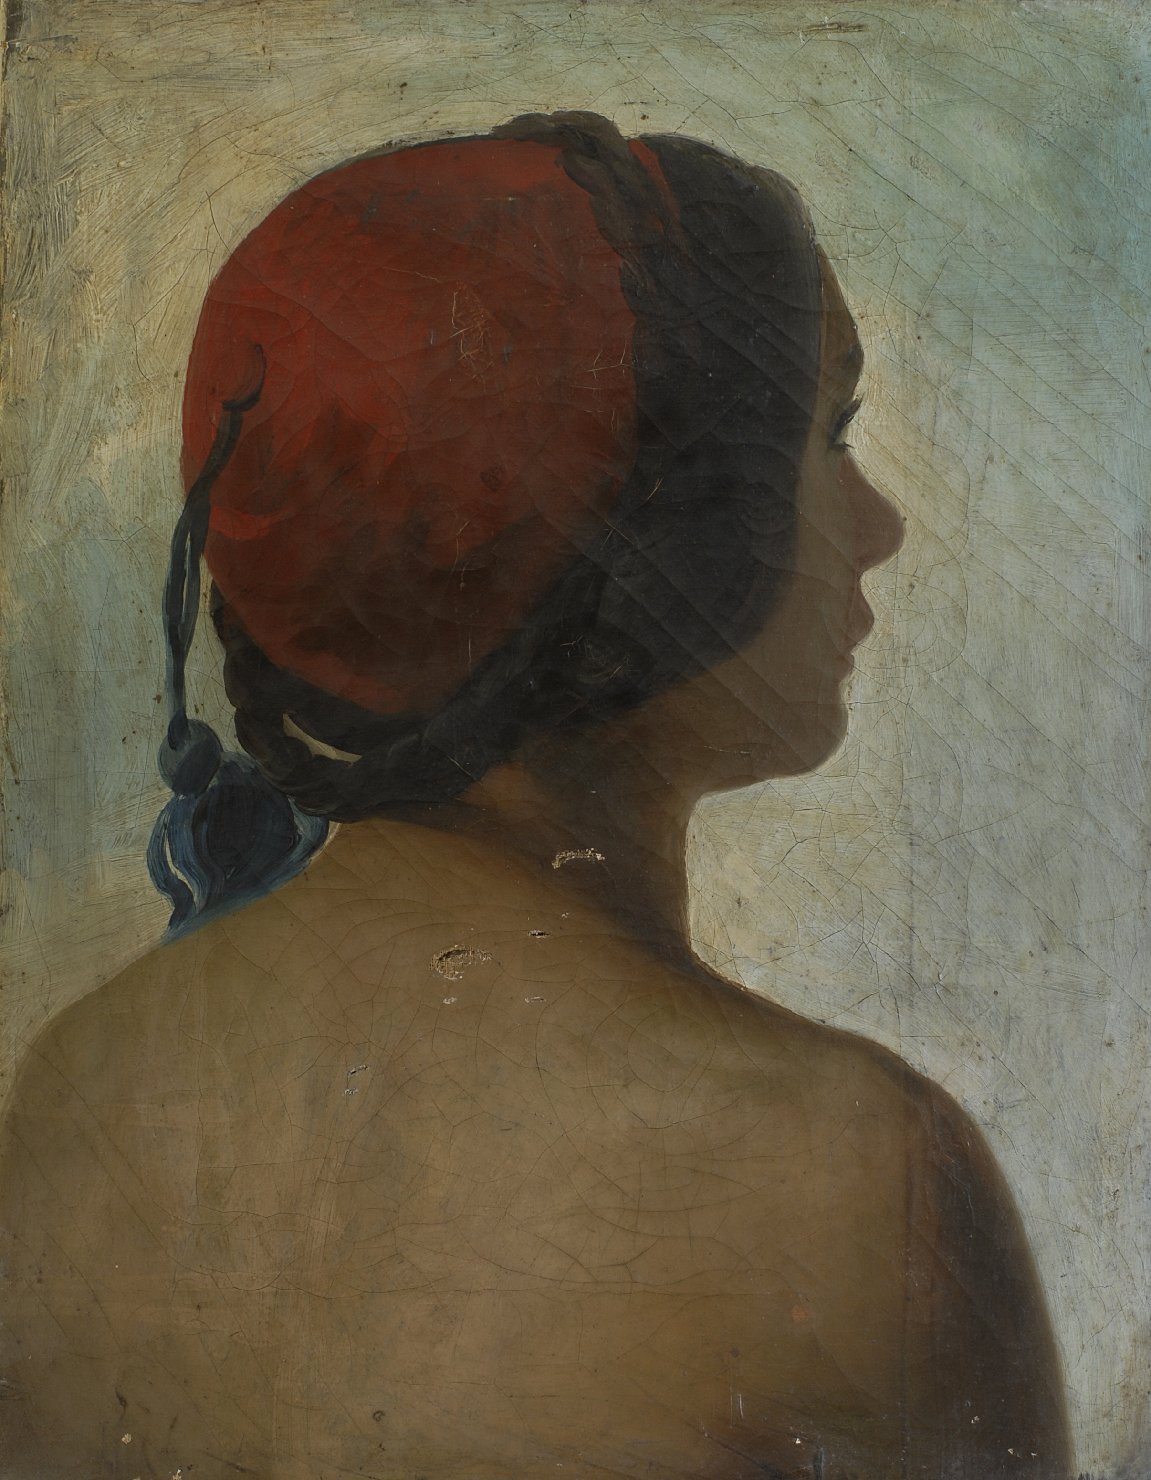 Araba vista di spalle, testa di donna (dipinto)